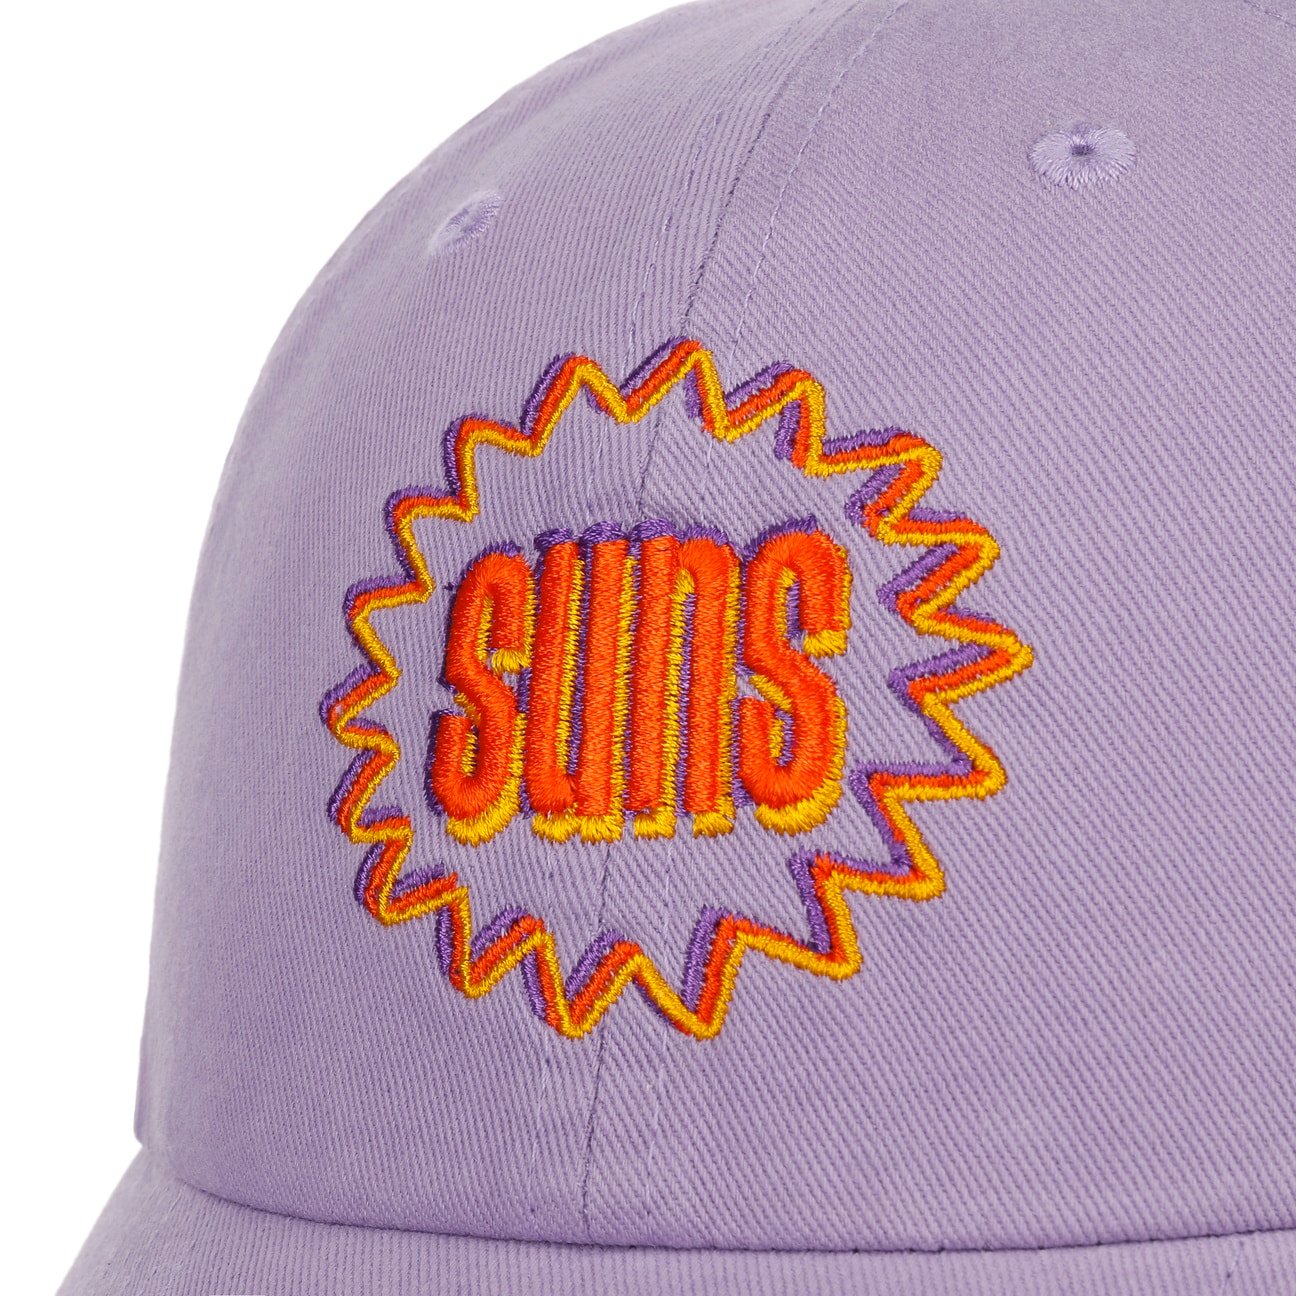 Phoenix Suns Purple and White Mitchell & Ness Snapback Hat